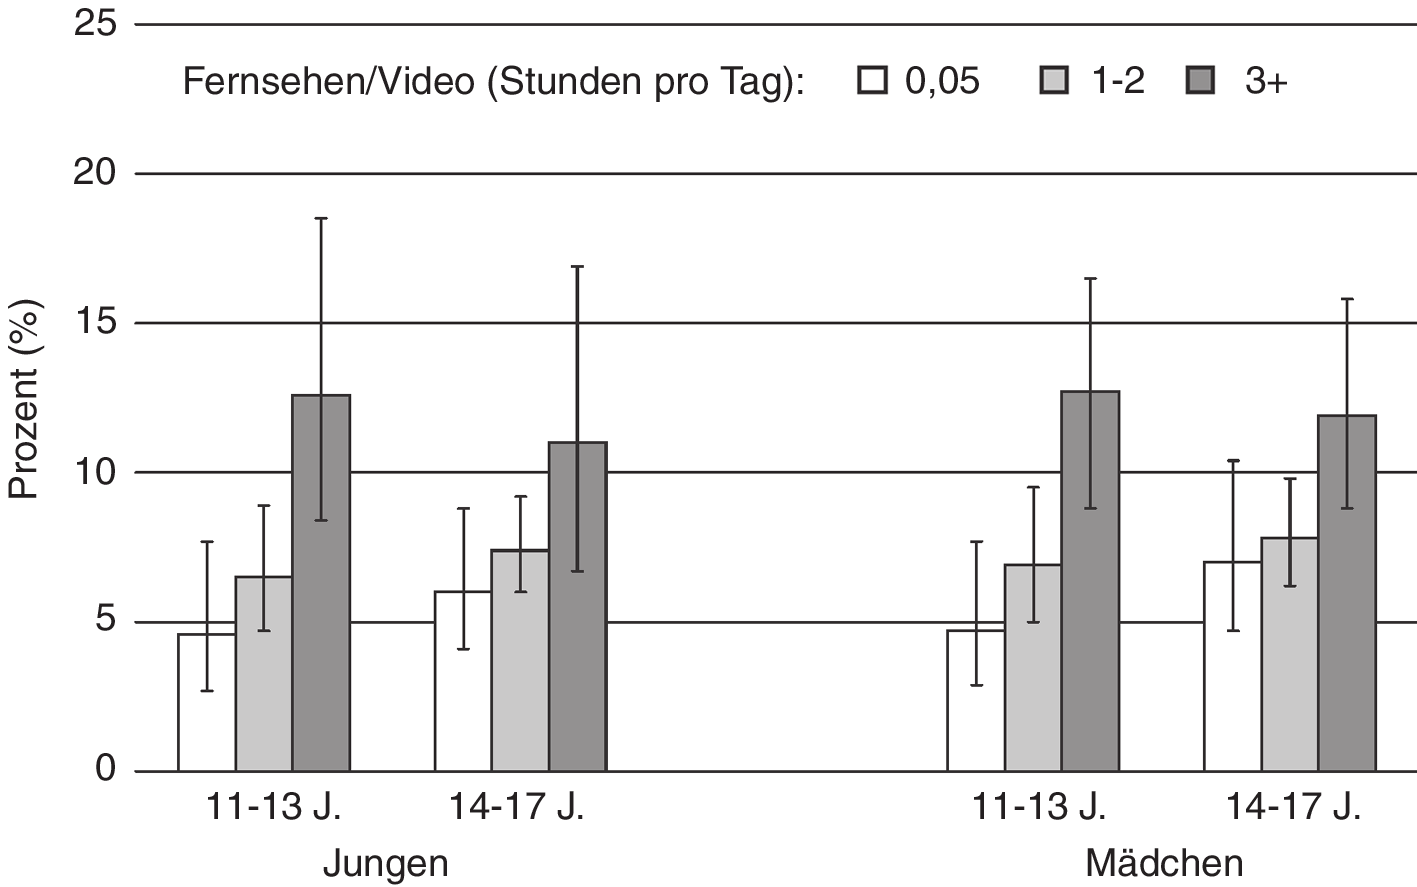 Gesundheit von Kindern und Jugendlichen in Deutschland Schwerpunkt: Schule mobiltelefonieren. Fernsehen und Video schauen ist bei Jungen und Mädchen gleichermaßen populär.